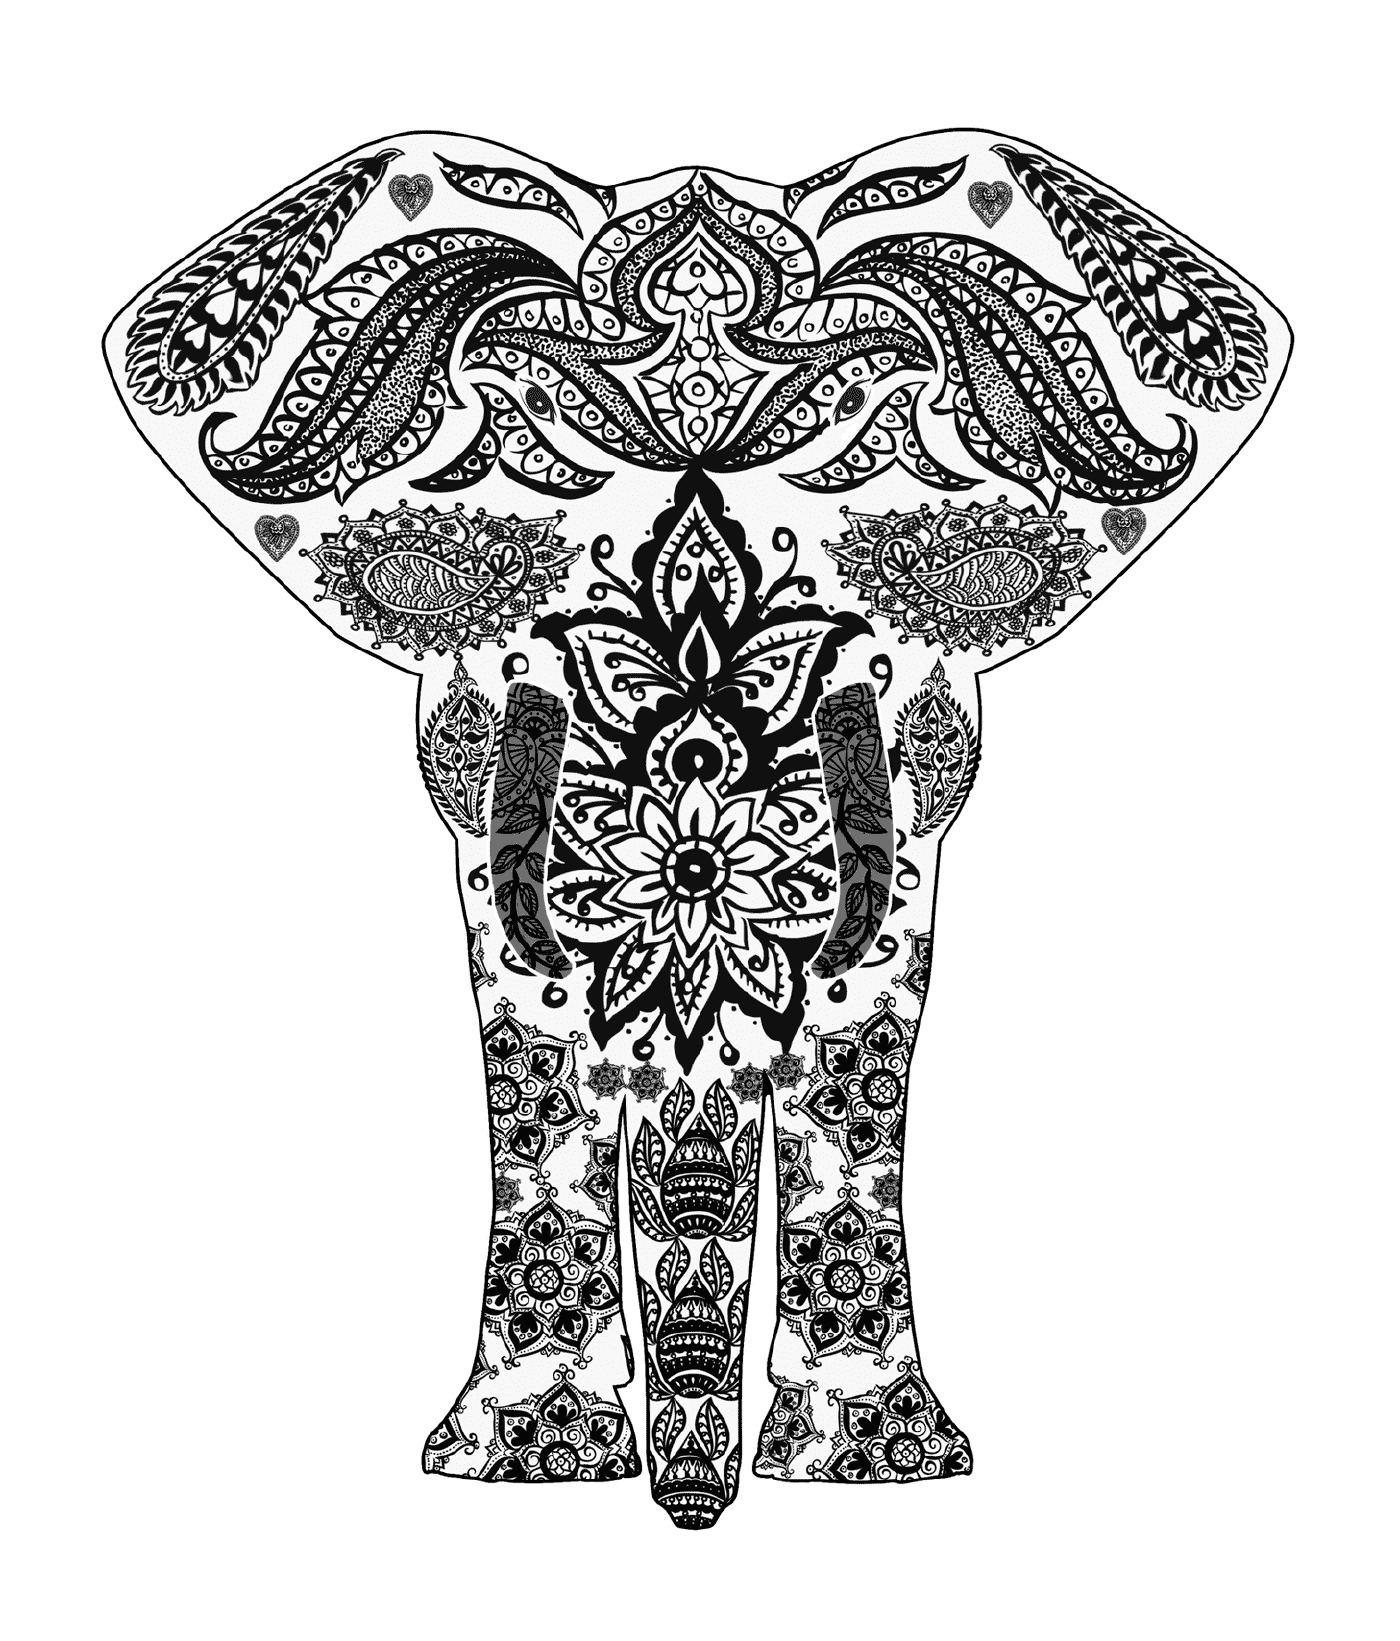  Elefant mit komplexen Mustern 